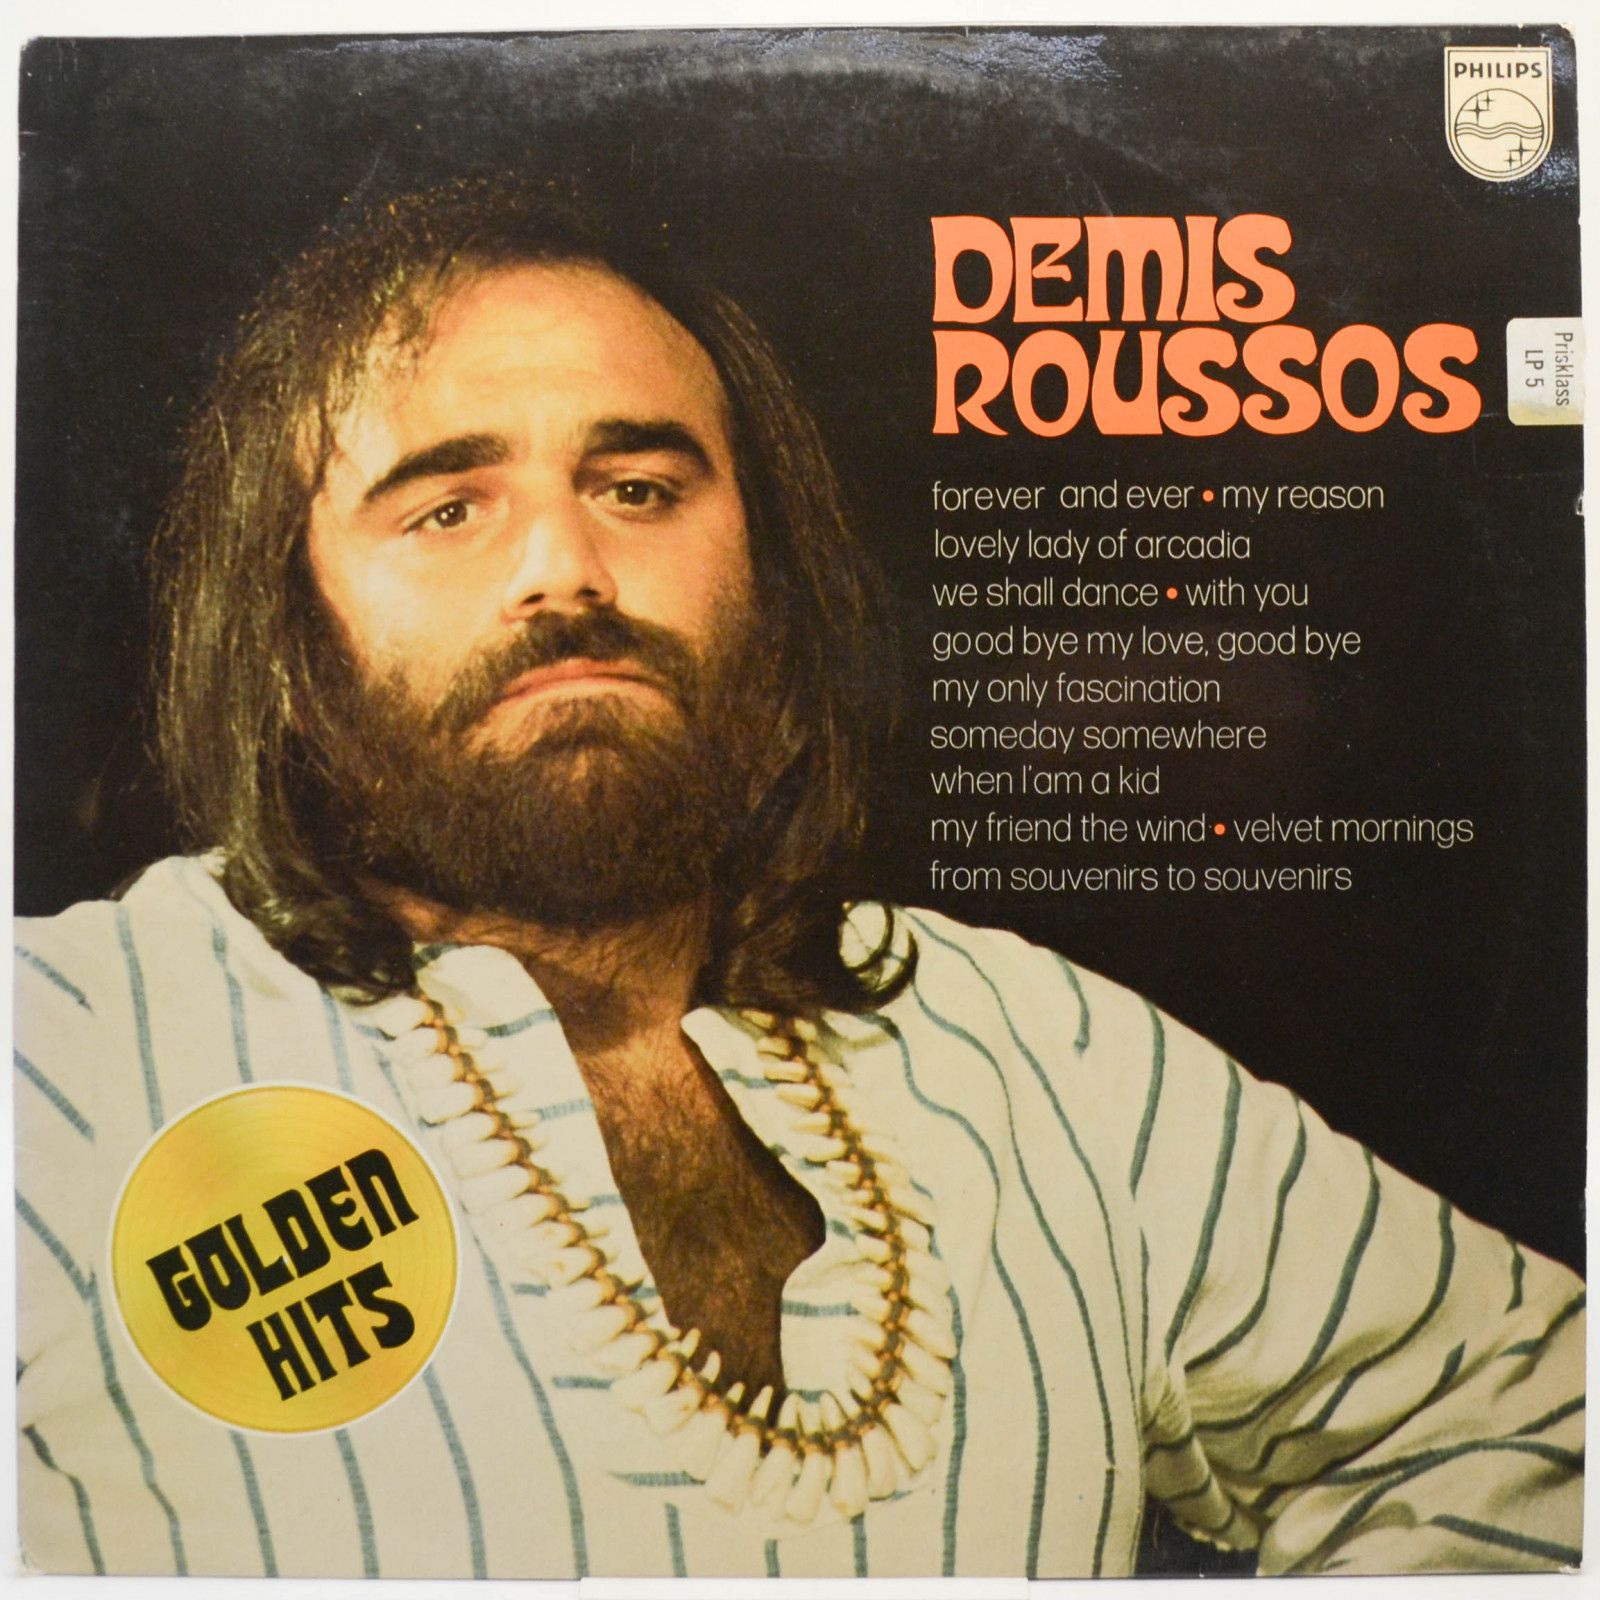 Demis Roussos — Golden Hits (France), 1975